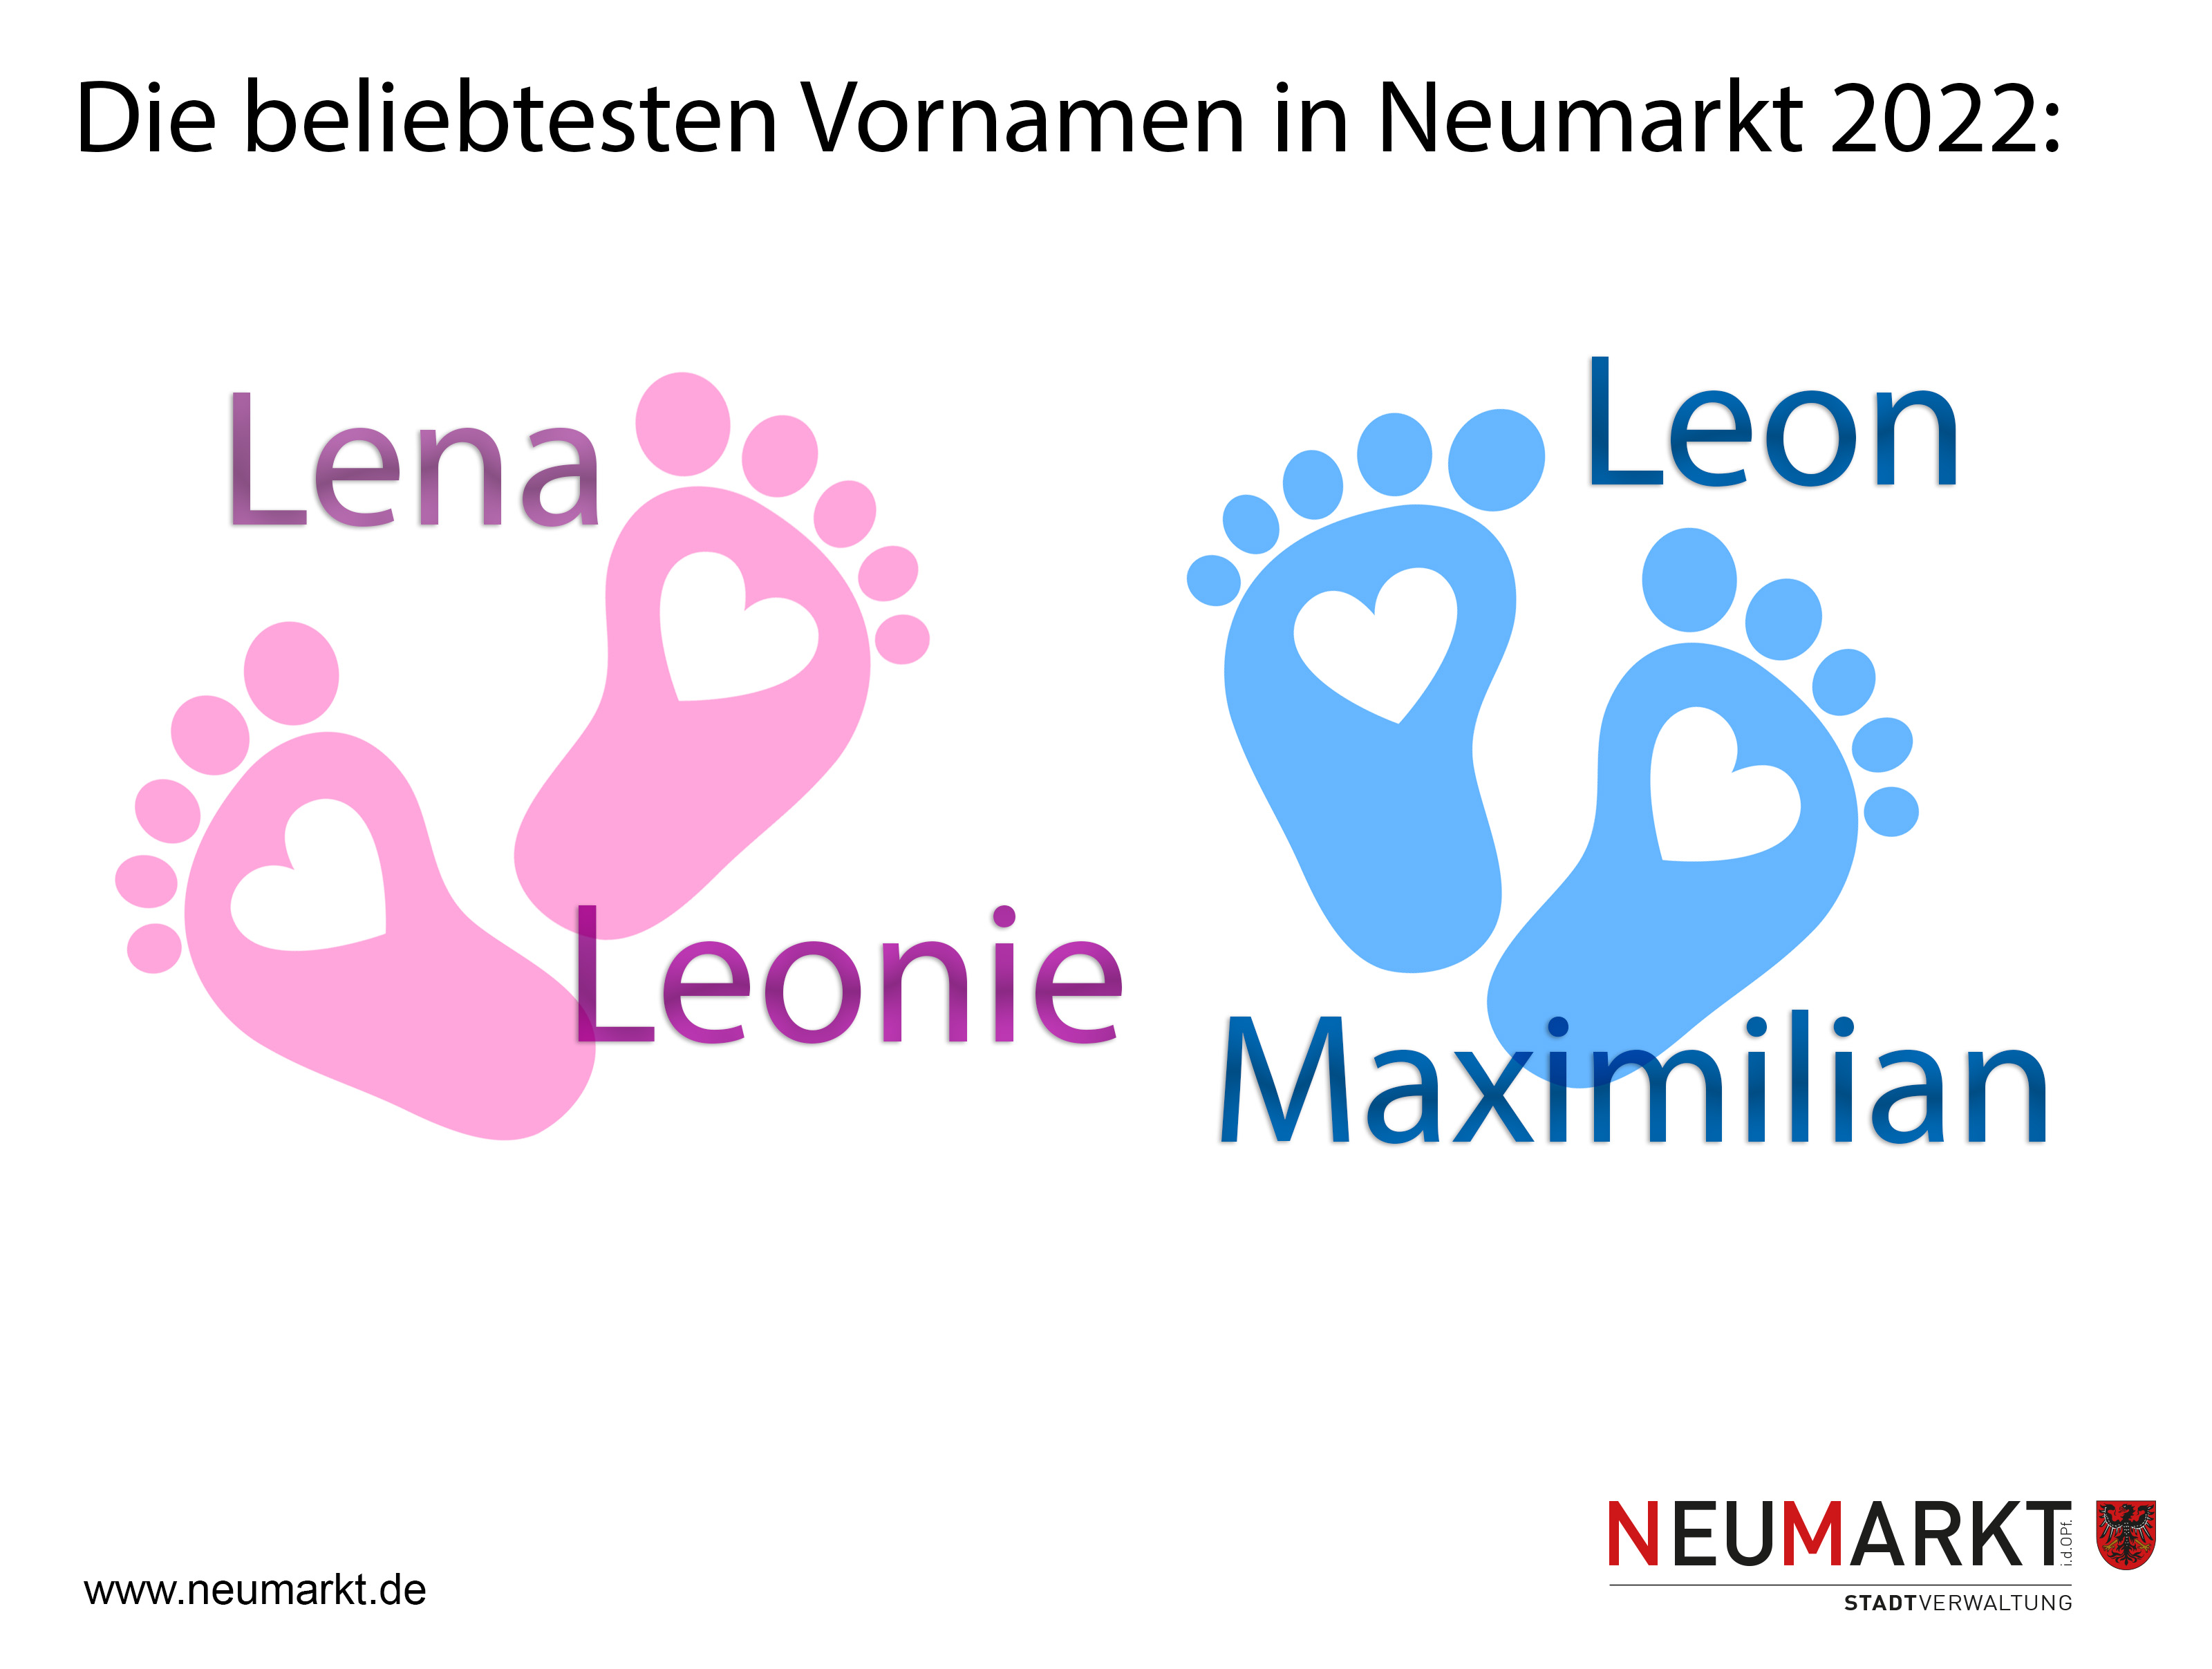 Lena und Leonie sowie Leon und Maximilian waren 2022 die beliebtesten Vornamen in Neumarkt für Neugeborene